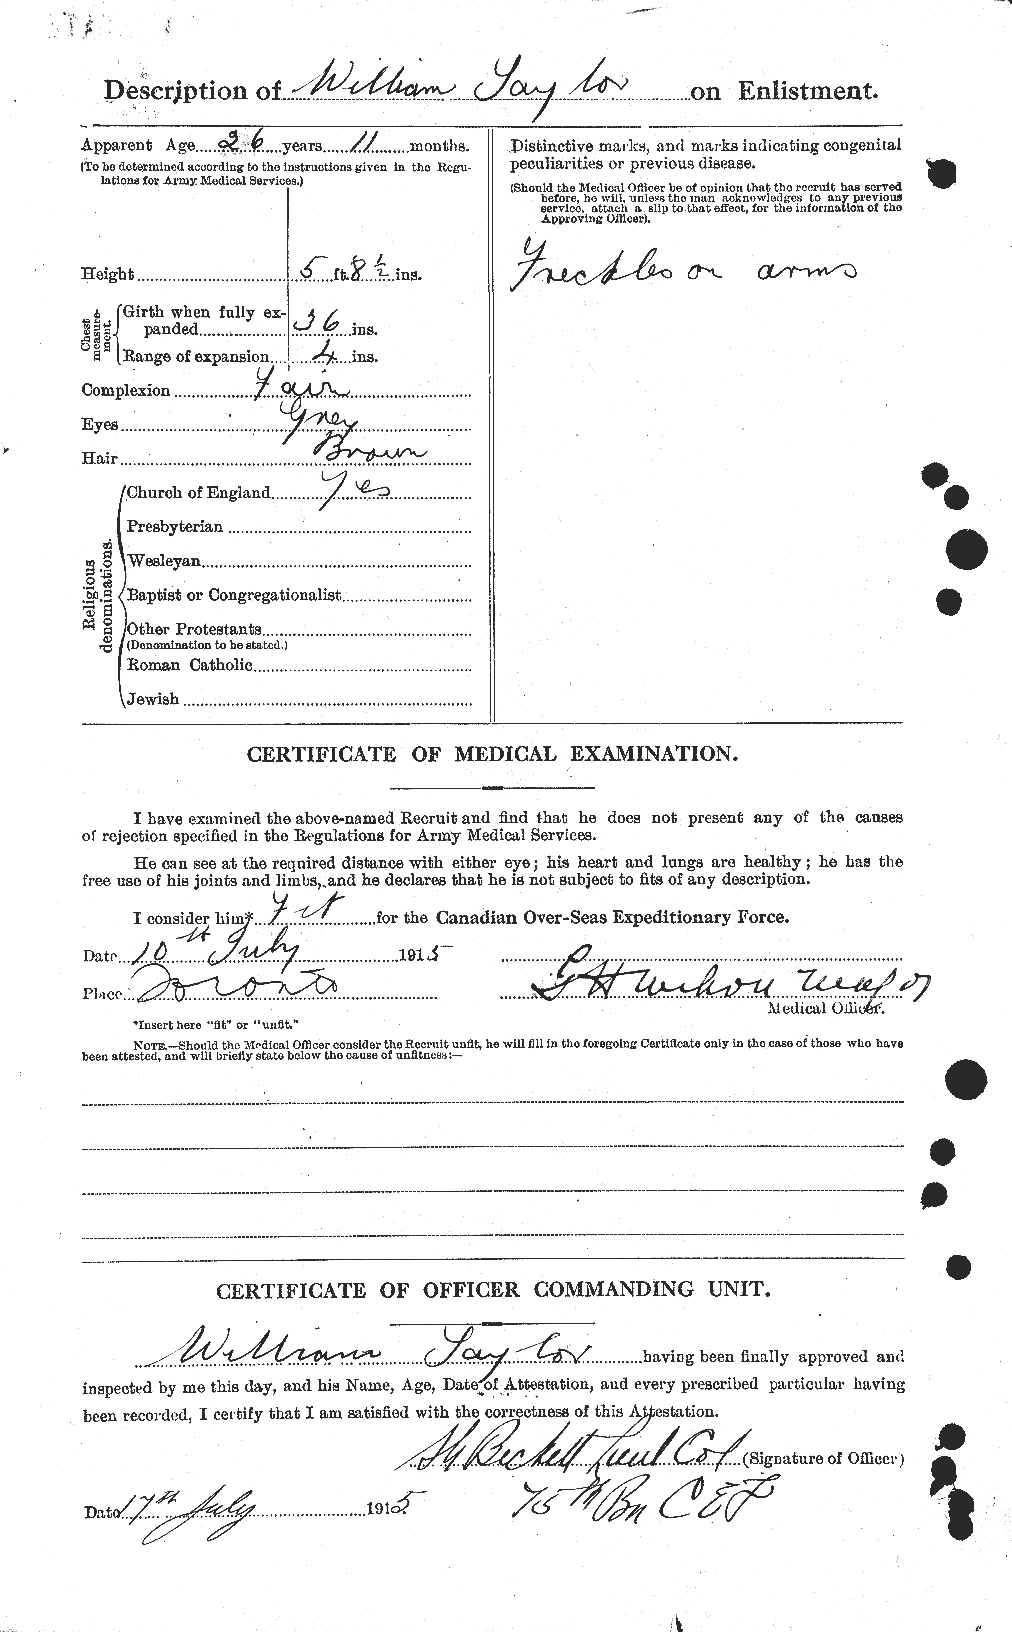 Dossiers du Personnel de la Première Guerre mondiale - CEC 628100b